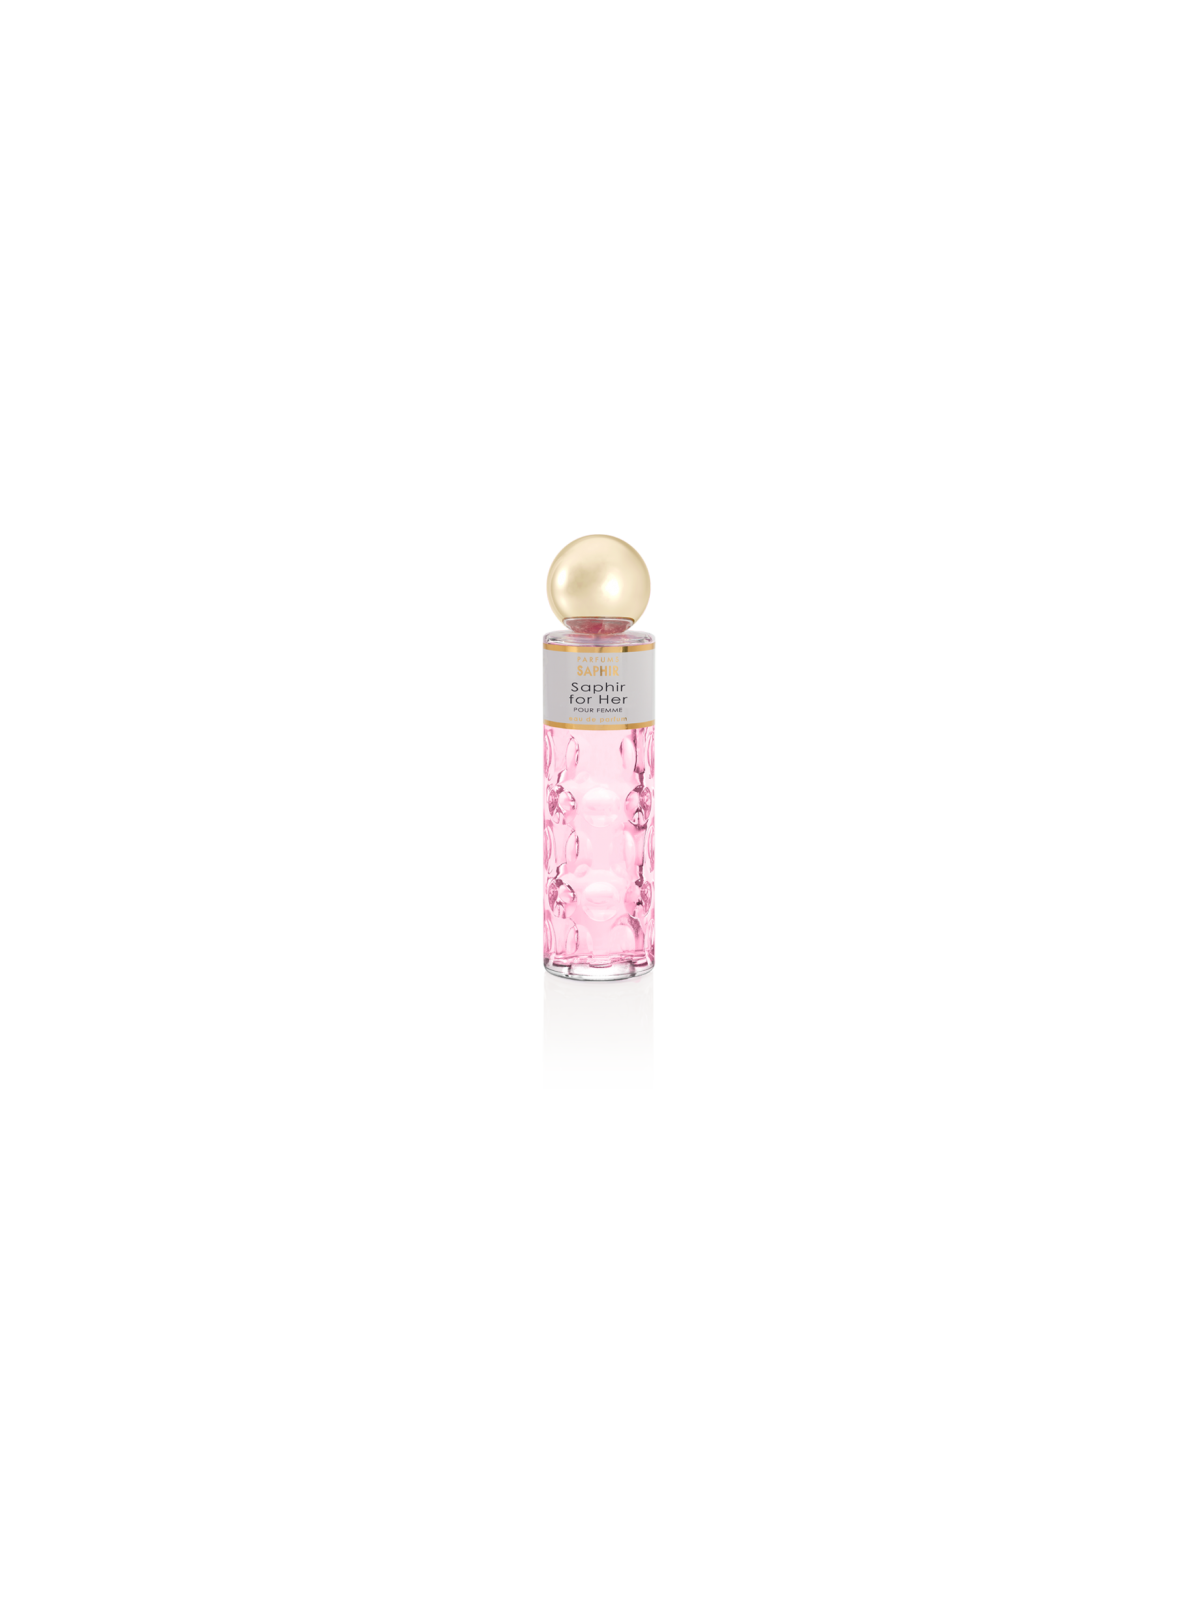 Comprar Perfume SAPHIR for Her 200ml. en Perfumes para mujer por sólo 12,90 € o un precio específico de 12,90 € en Thalie Care